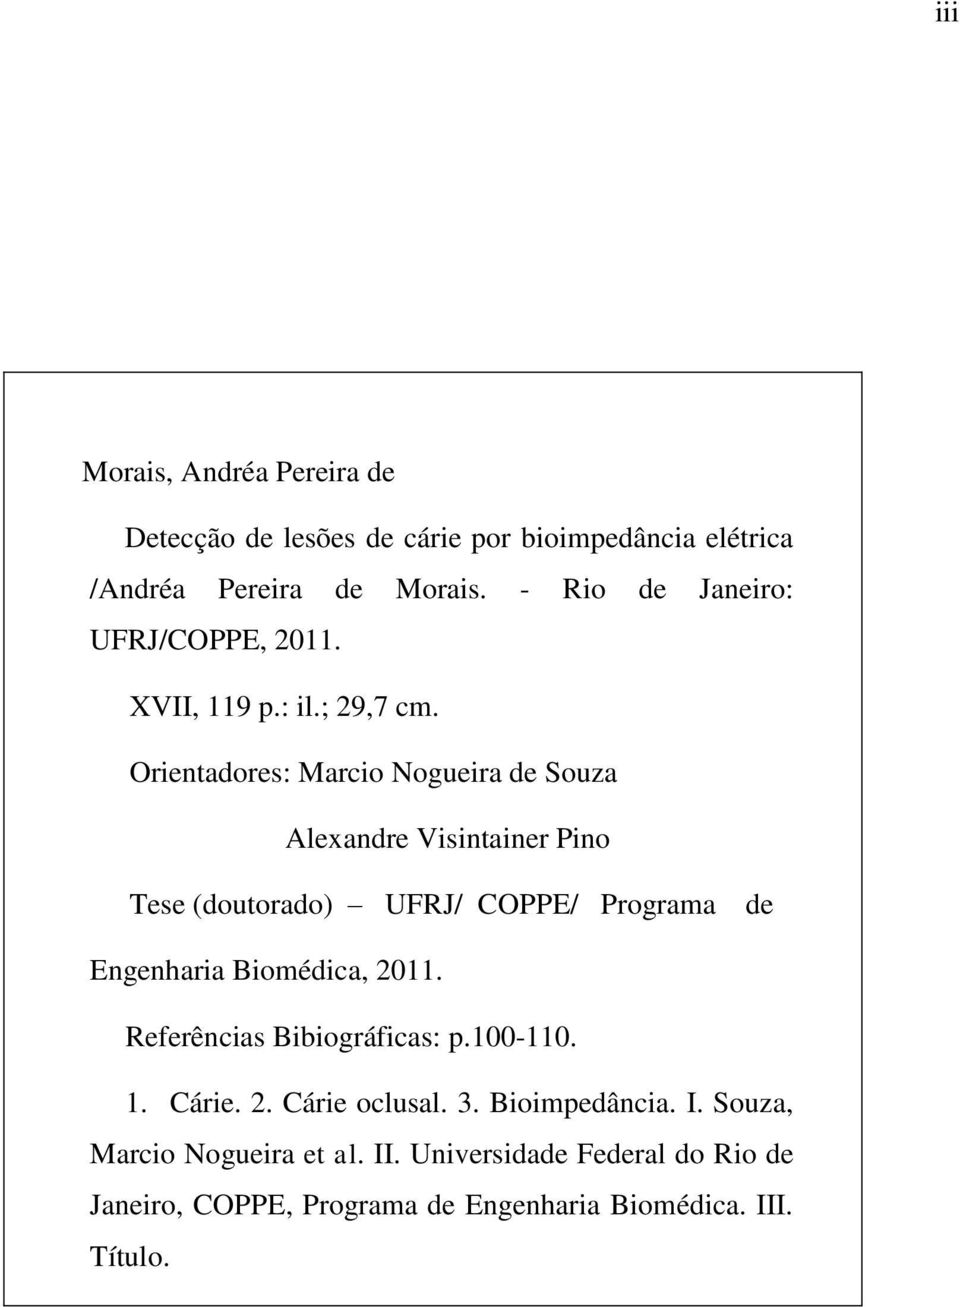 Orientadores: Marcio Nogueira de Souza Alexandre Visintainer Pino Tese (doutorado) UFRJ/ COPPE/ Programa de Engenharia Biomédica,